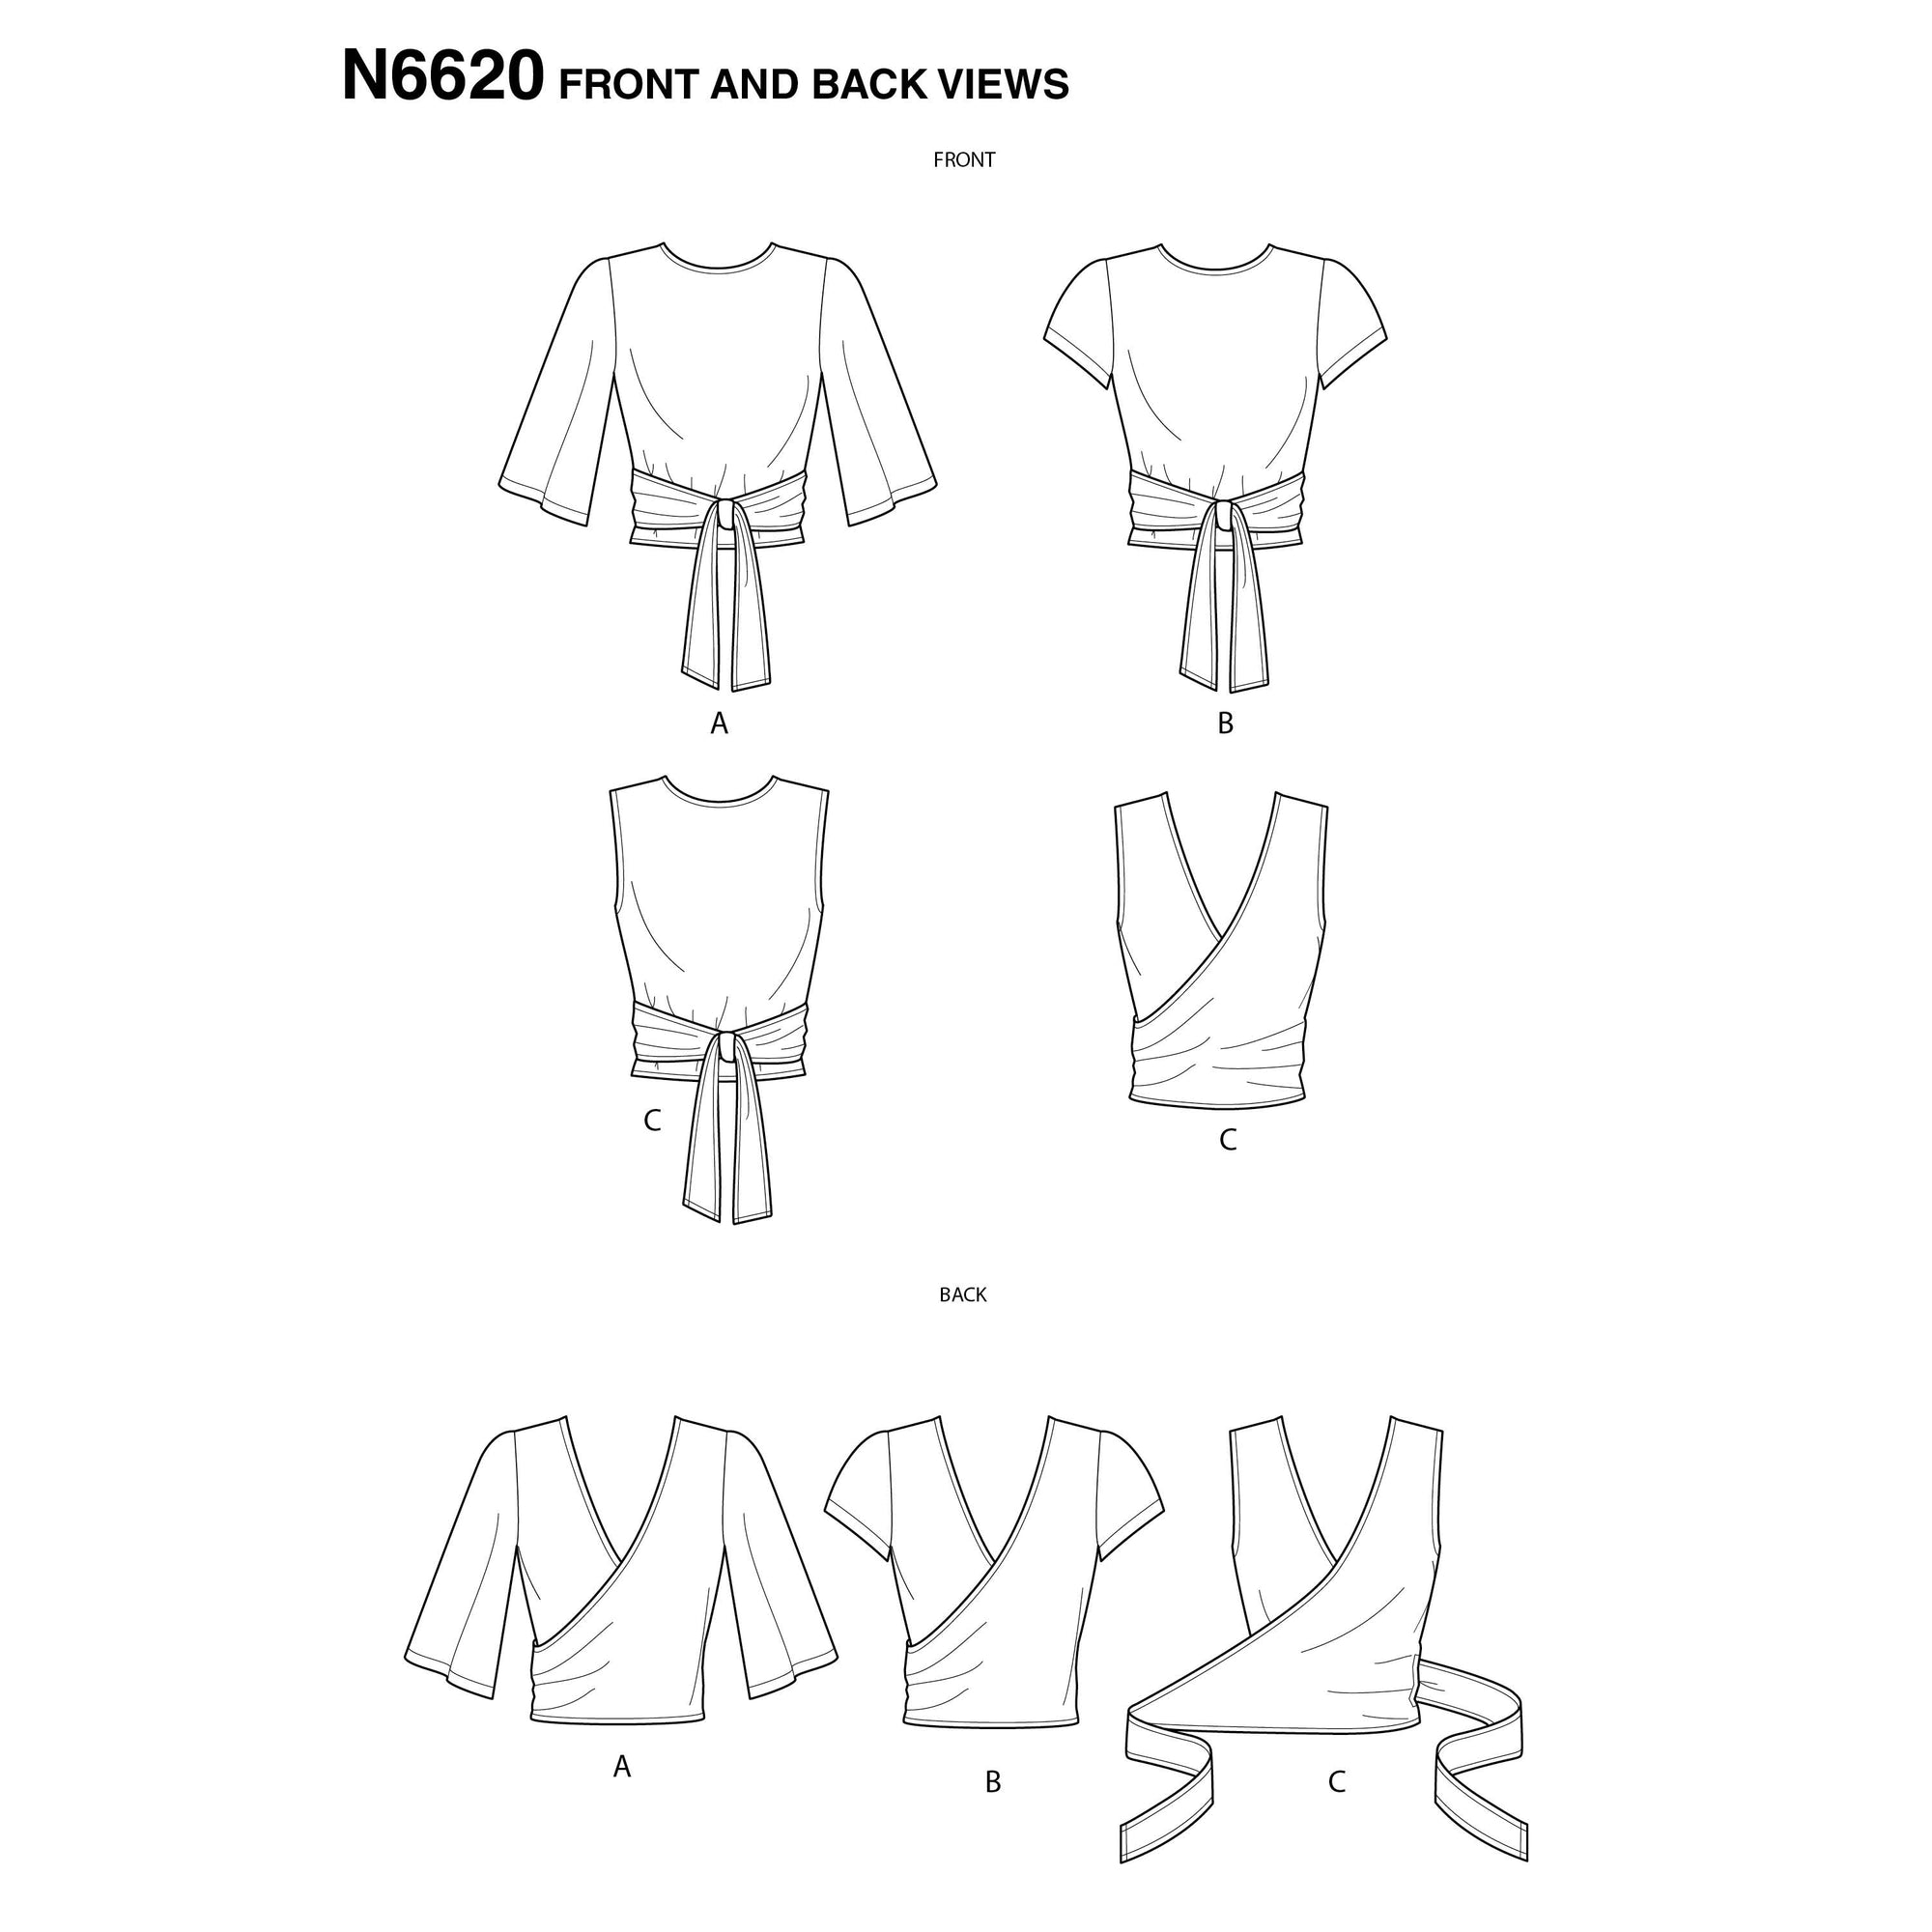 6620 New Look Sewing Pattern N6620 Misses' Wrap Tops